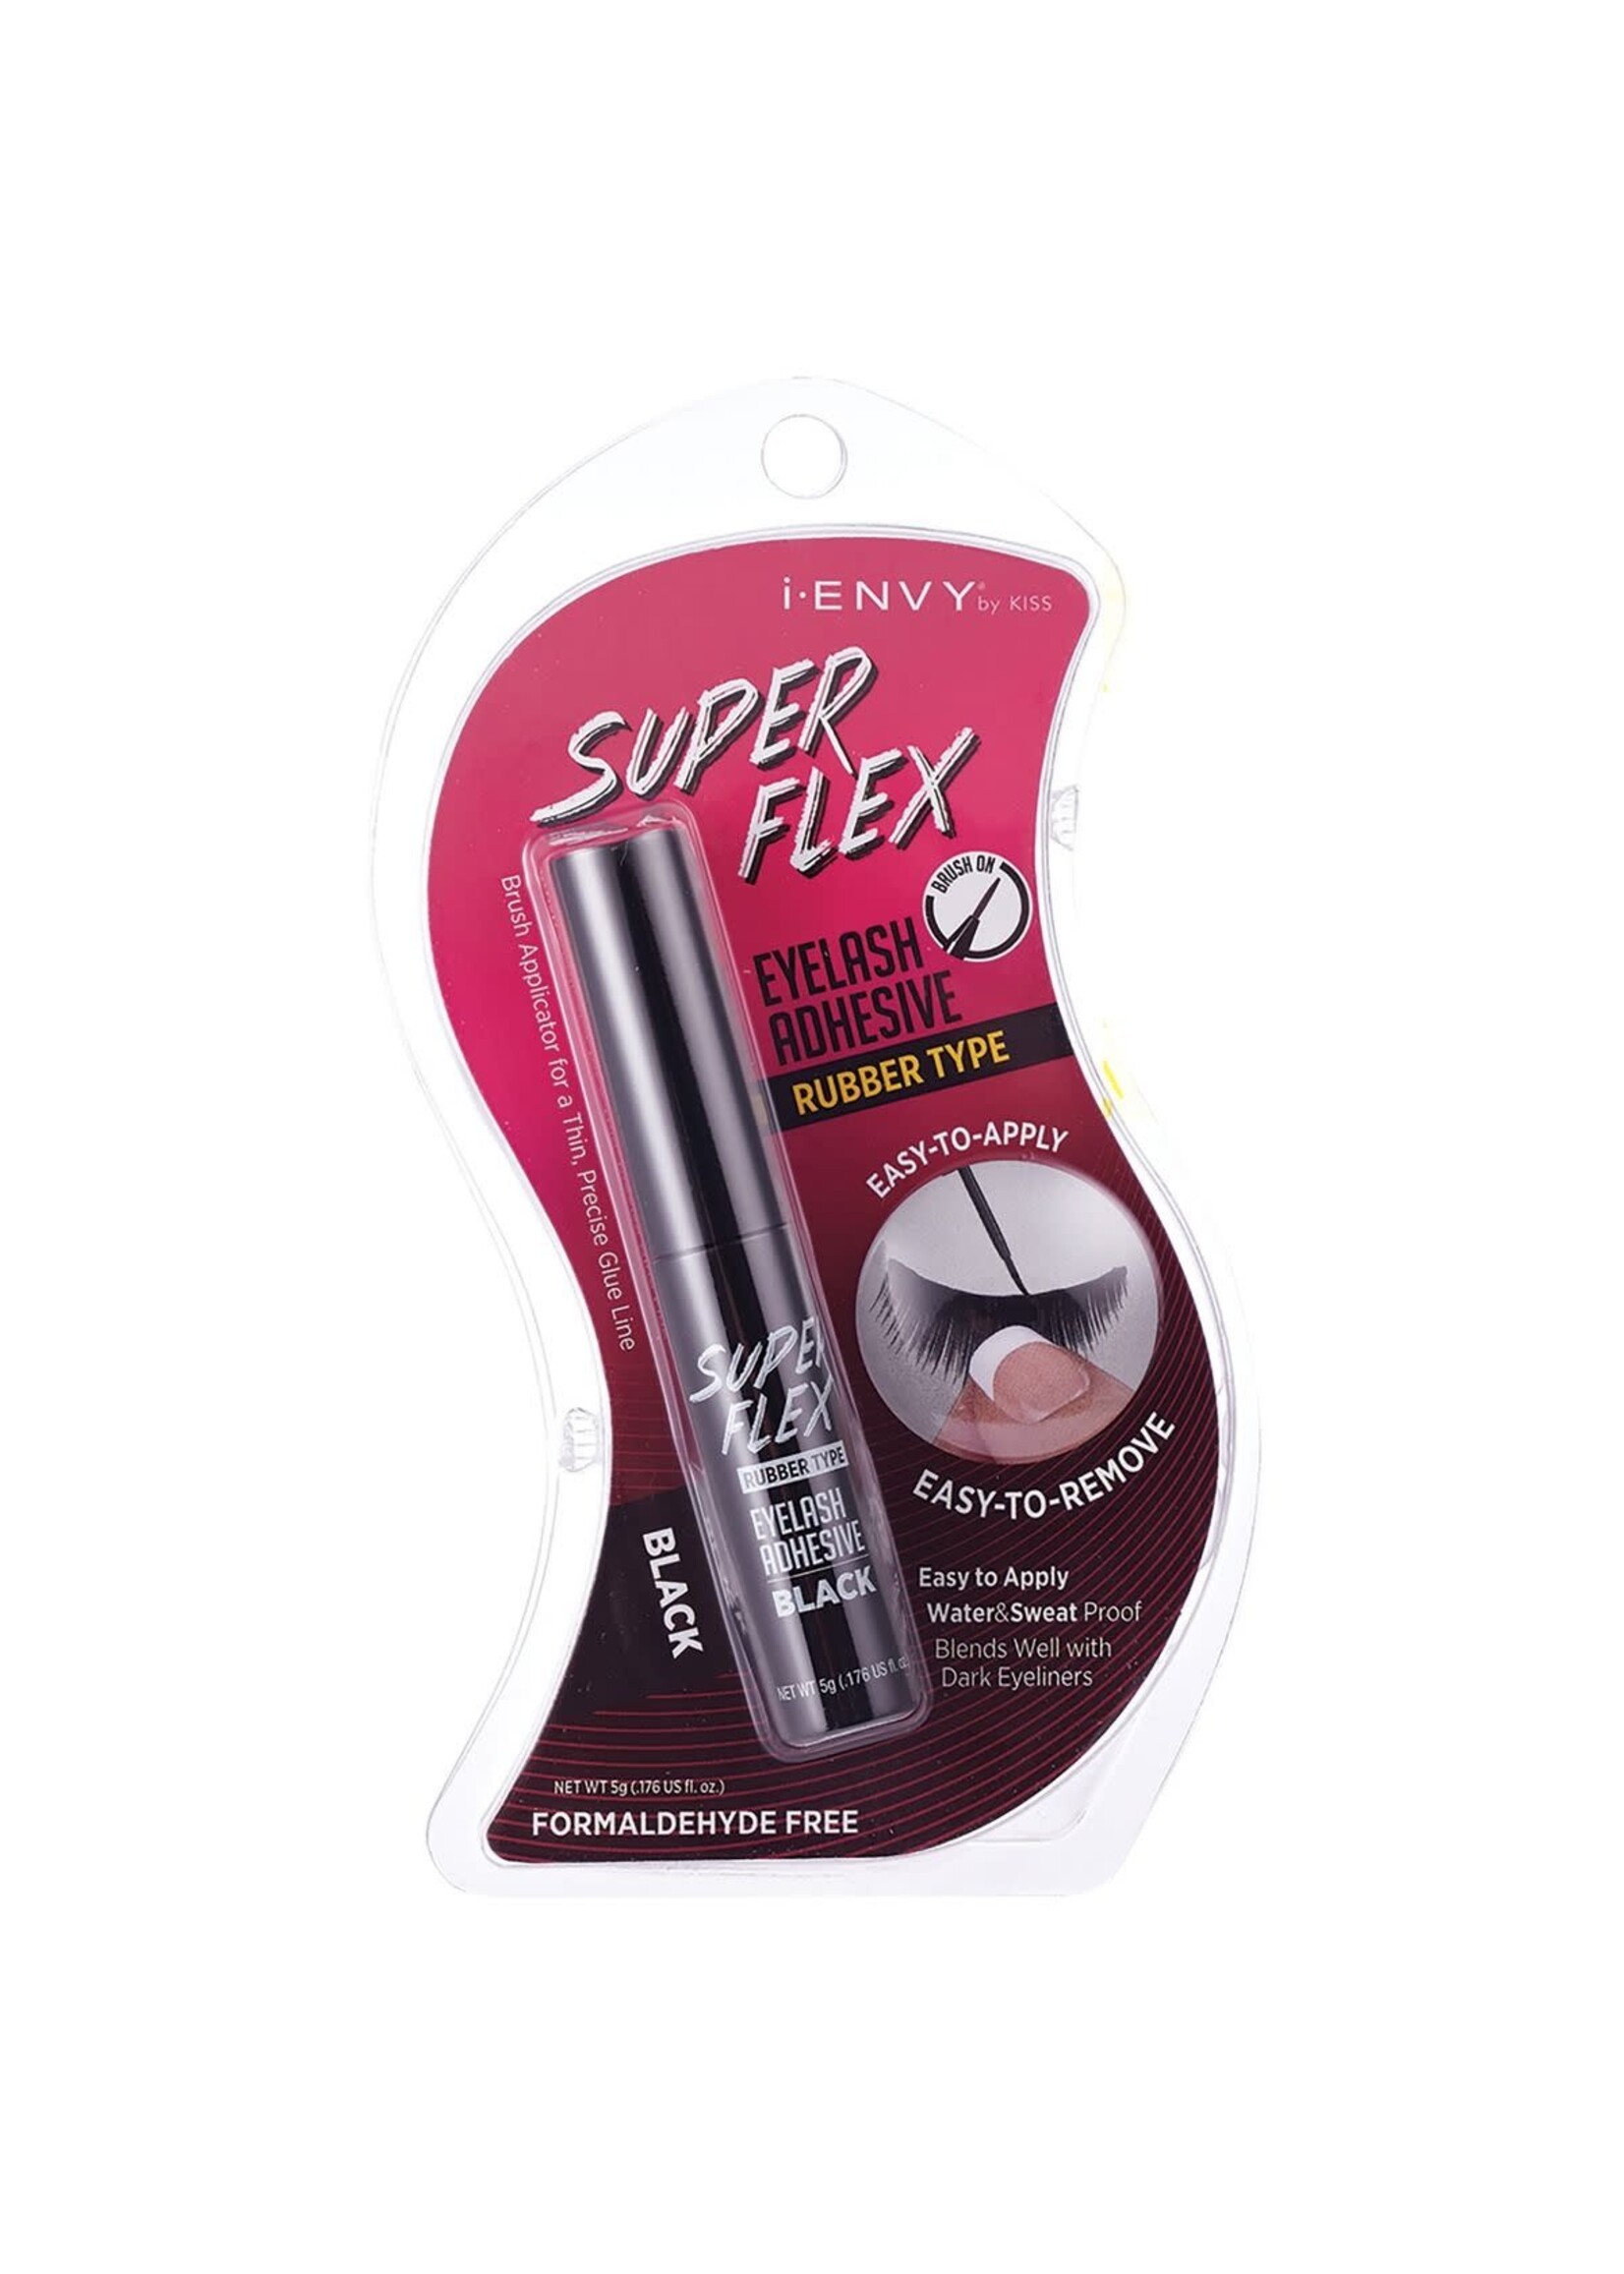 Super Flex Eyelash Adhesive Black KPEG07